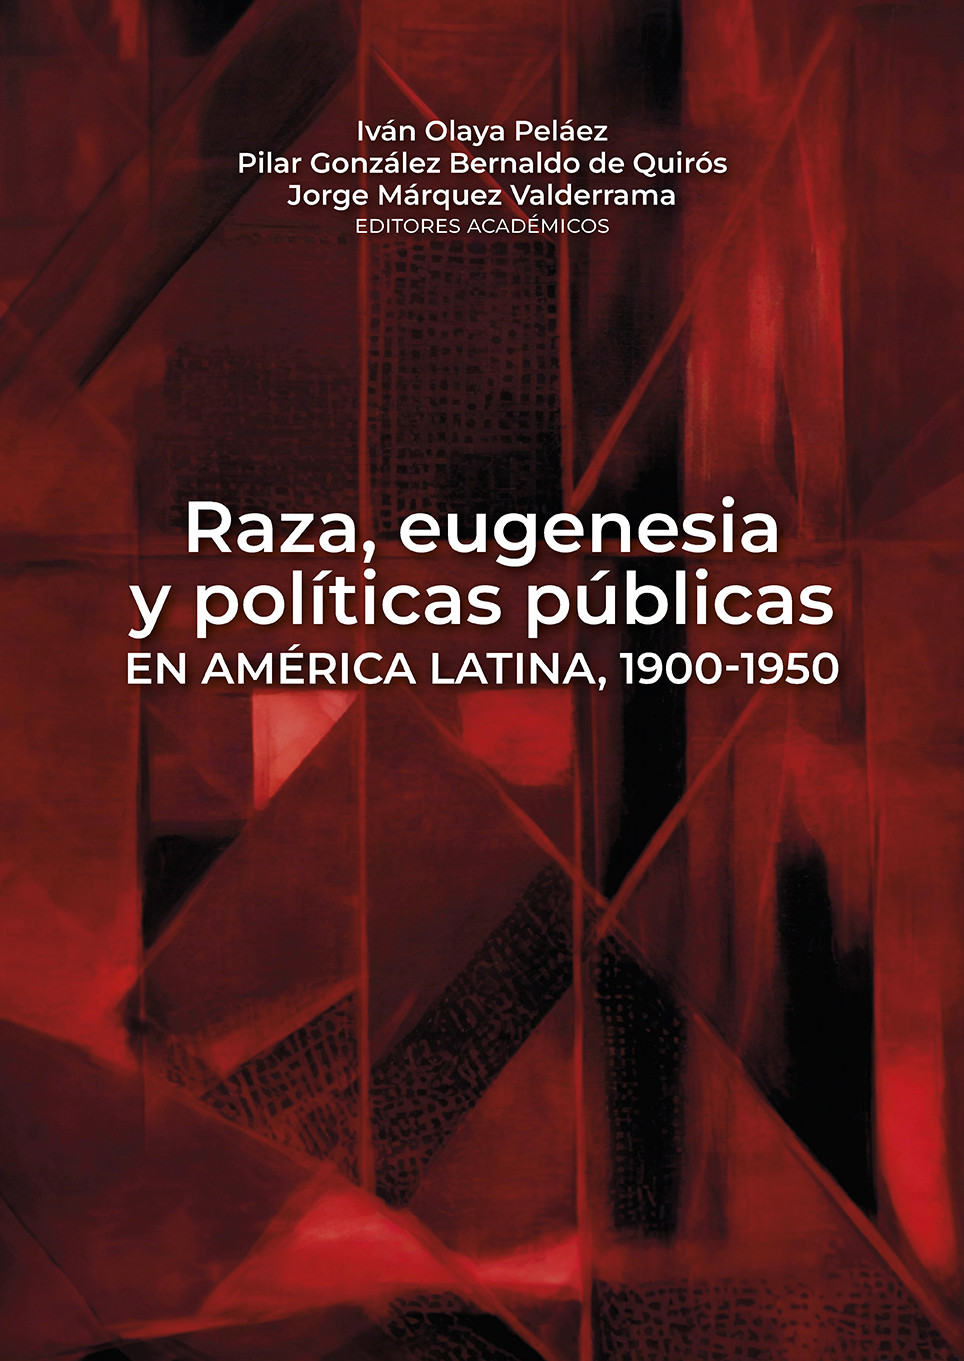 Imagen de portada del libro Raza, eugenesia y políticas públicas en América Latina, 1900-1950